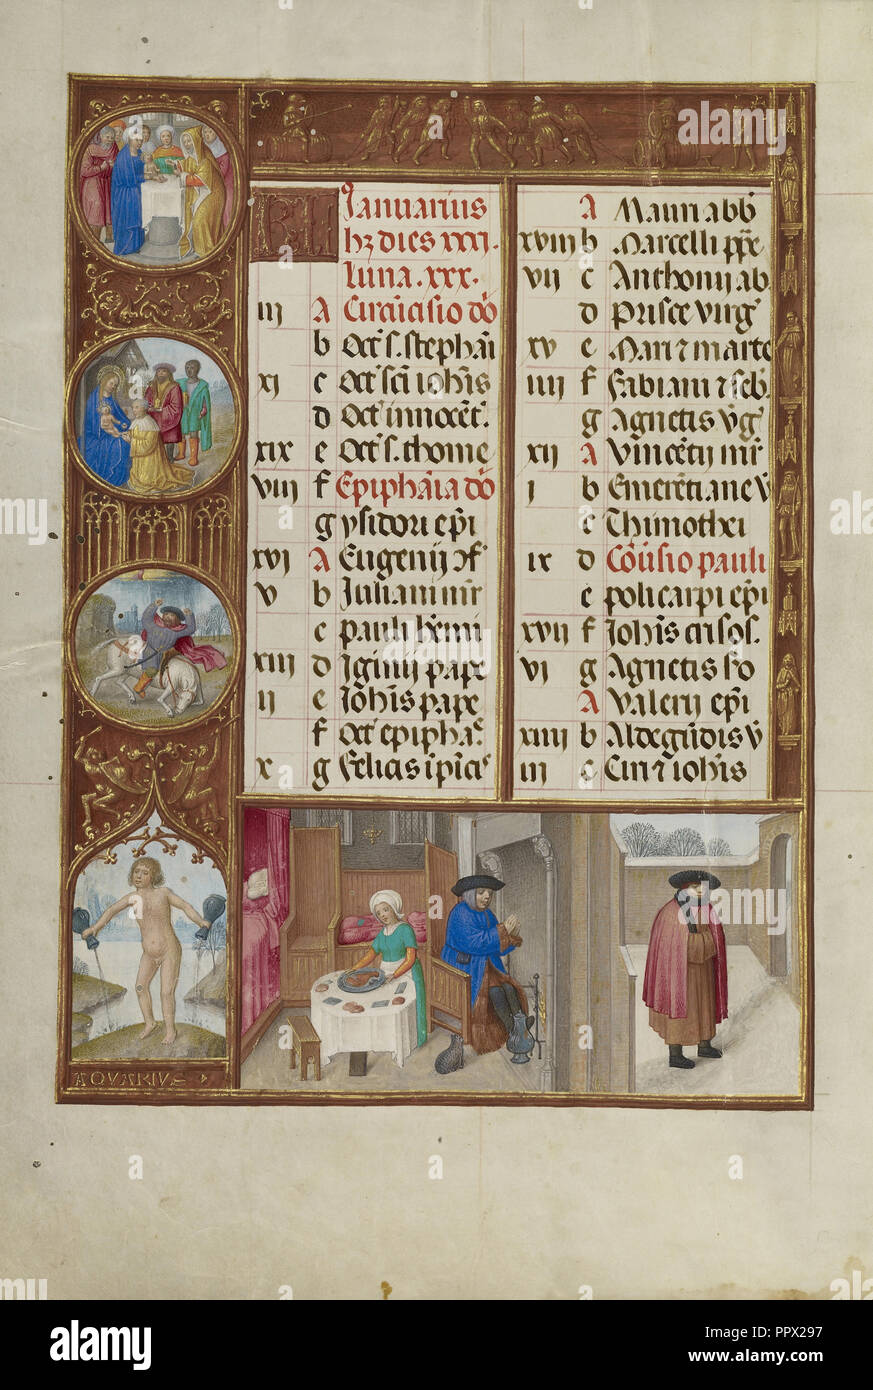 Banquete y calentamiento, signo zodiacal de Acuario; taller del maestro de James IV de Escocia, flamenco, antes de 1465 Foto de stock